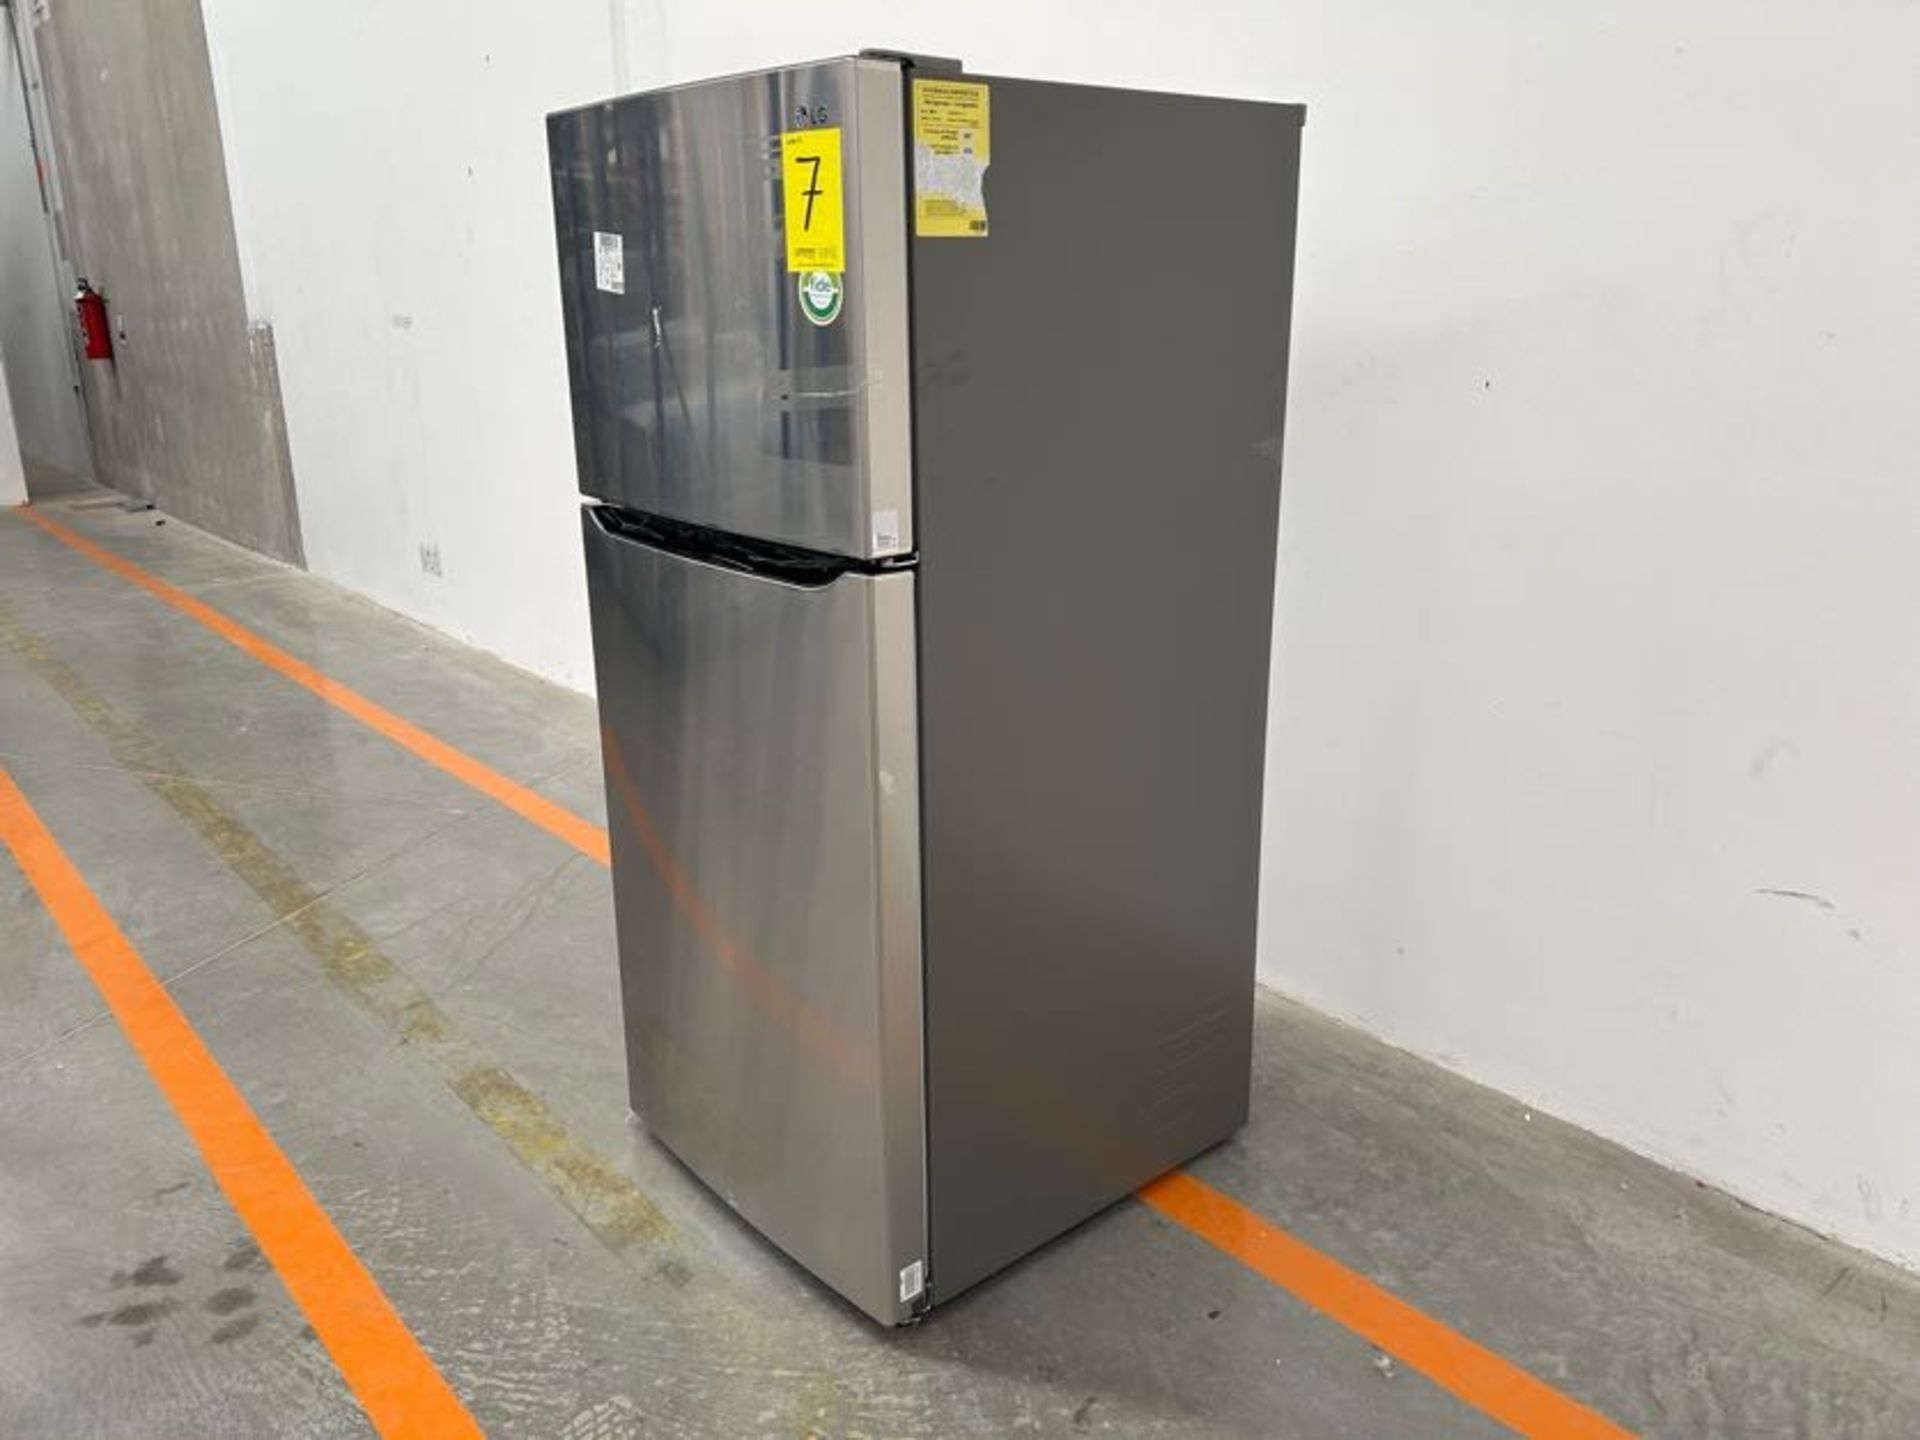 Refrigerador Marca LG, Modelo LT57BPSX, Serie 2Z784, Color GRIS (Equipo de devolución) - Image 2 of 7